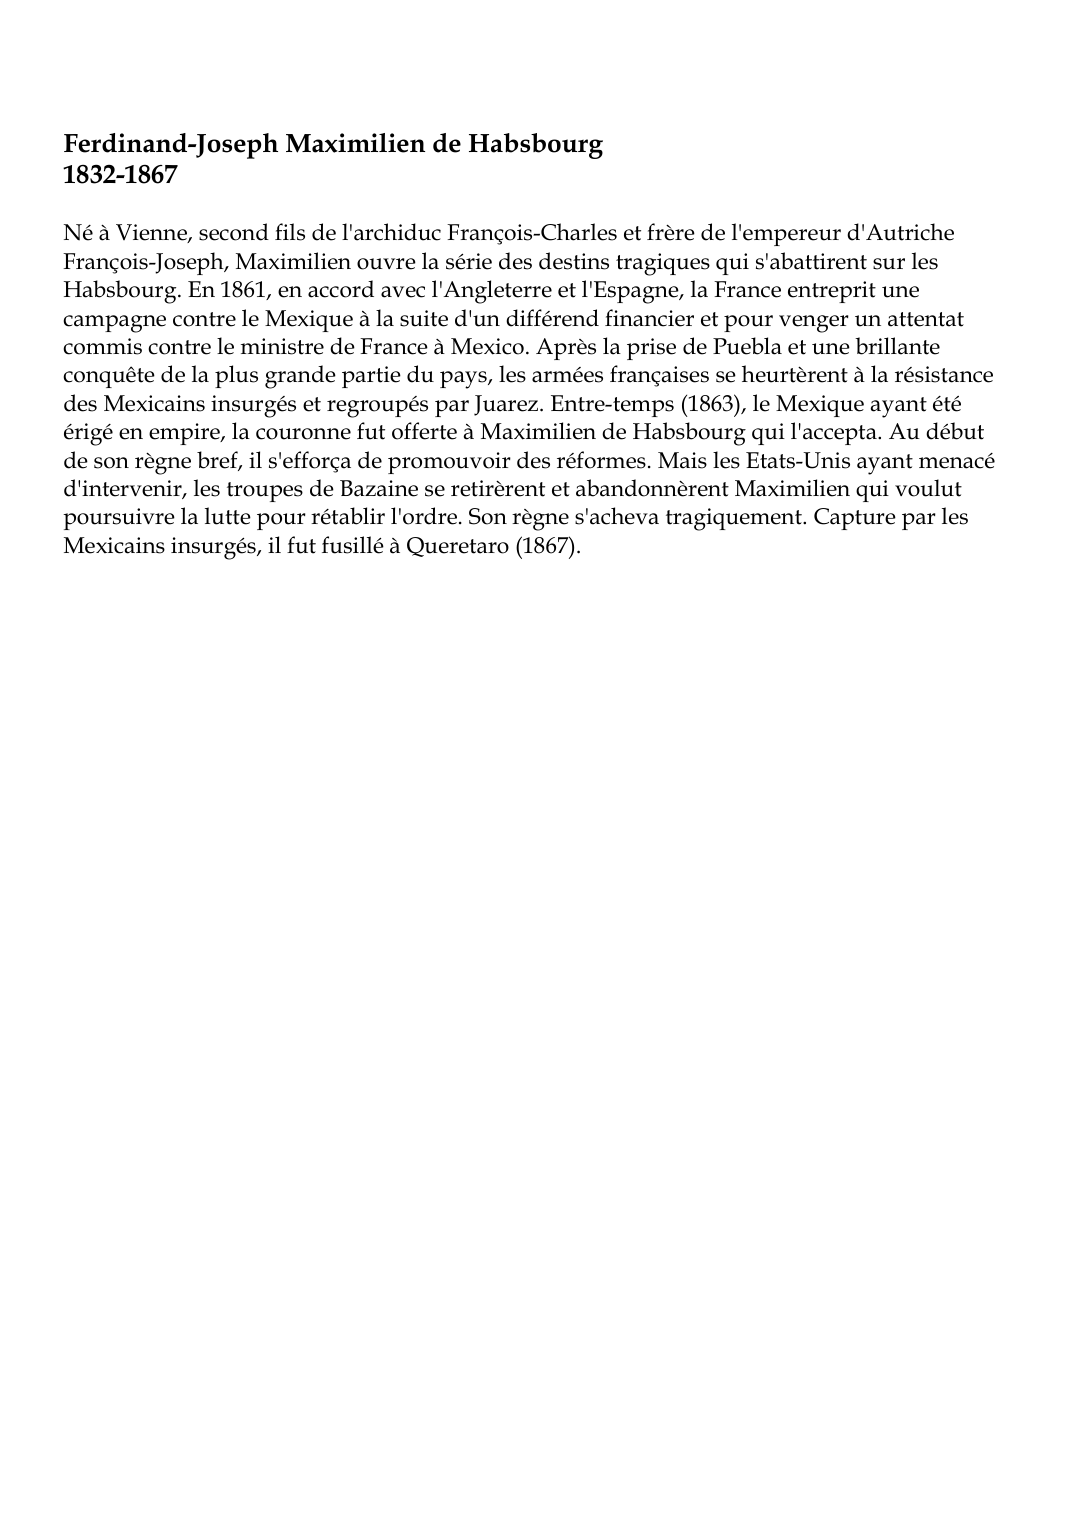 Prévisualisation du document Ferdinand-Joseph Maximilien de Habsbourg1832-1867Né à Vienne, second fils de l'archiduc François-Charles et frère de l'empereur d'AutricheFrançois-Joseph, Maximilien ouvre la série des destins tragiques qui s'abattirent sur lesHabsbourg.